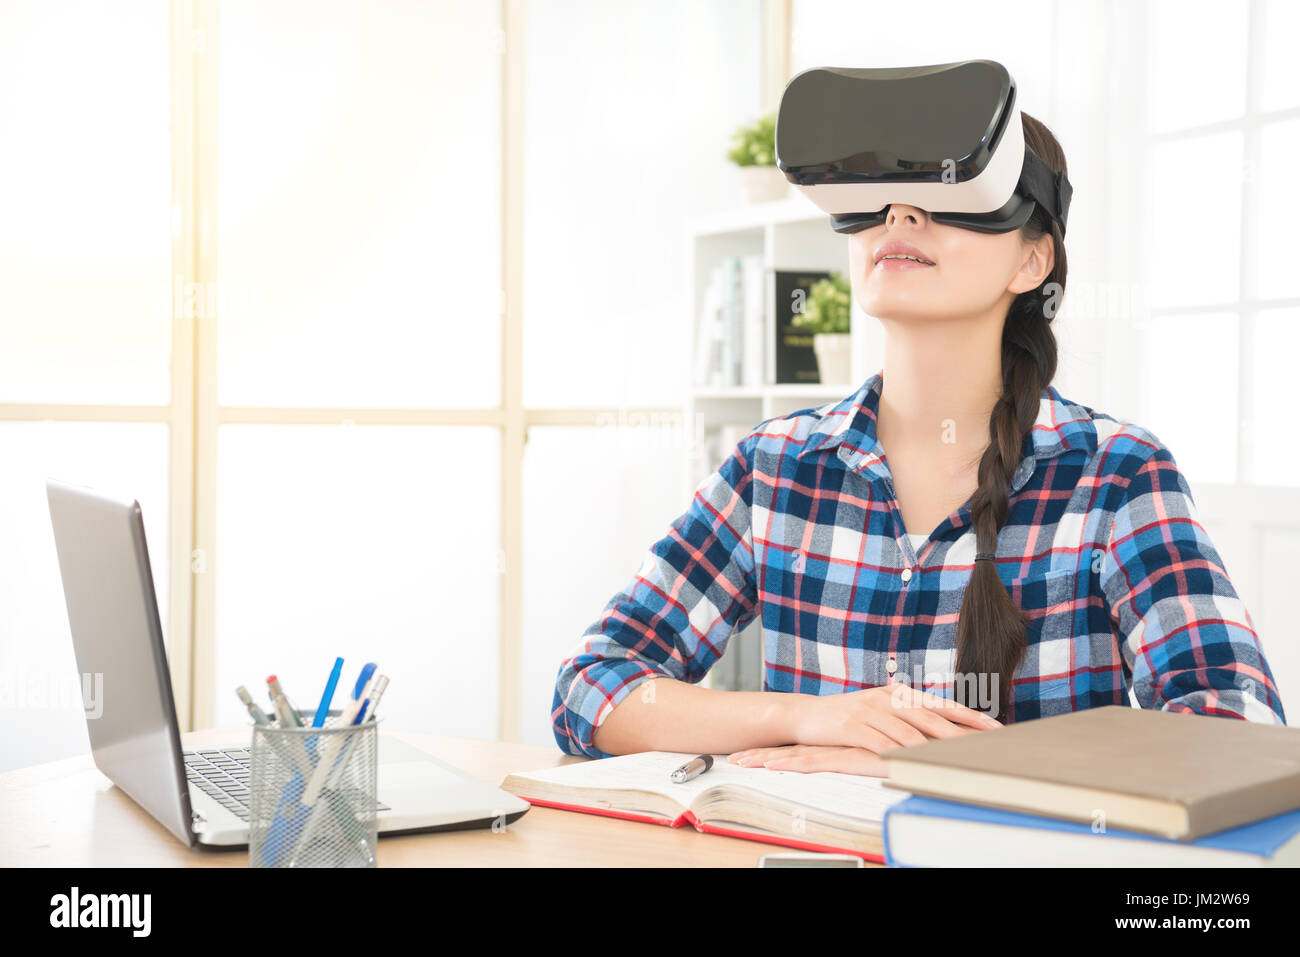 Asie jeune étudiant étudiant avec des lunettes de réalité virtuelle s'amuser et regarder des vidéos à la maison en vacances brancher ordinateur portable lorsqu'classe d'apprentissage Banque D'Images